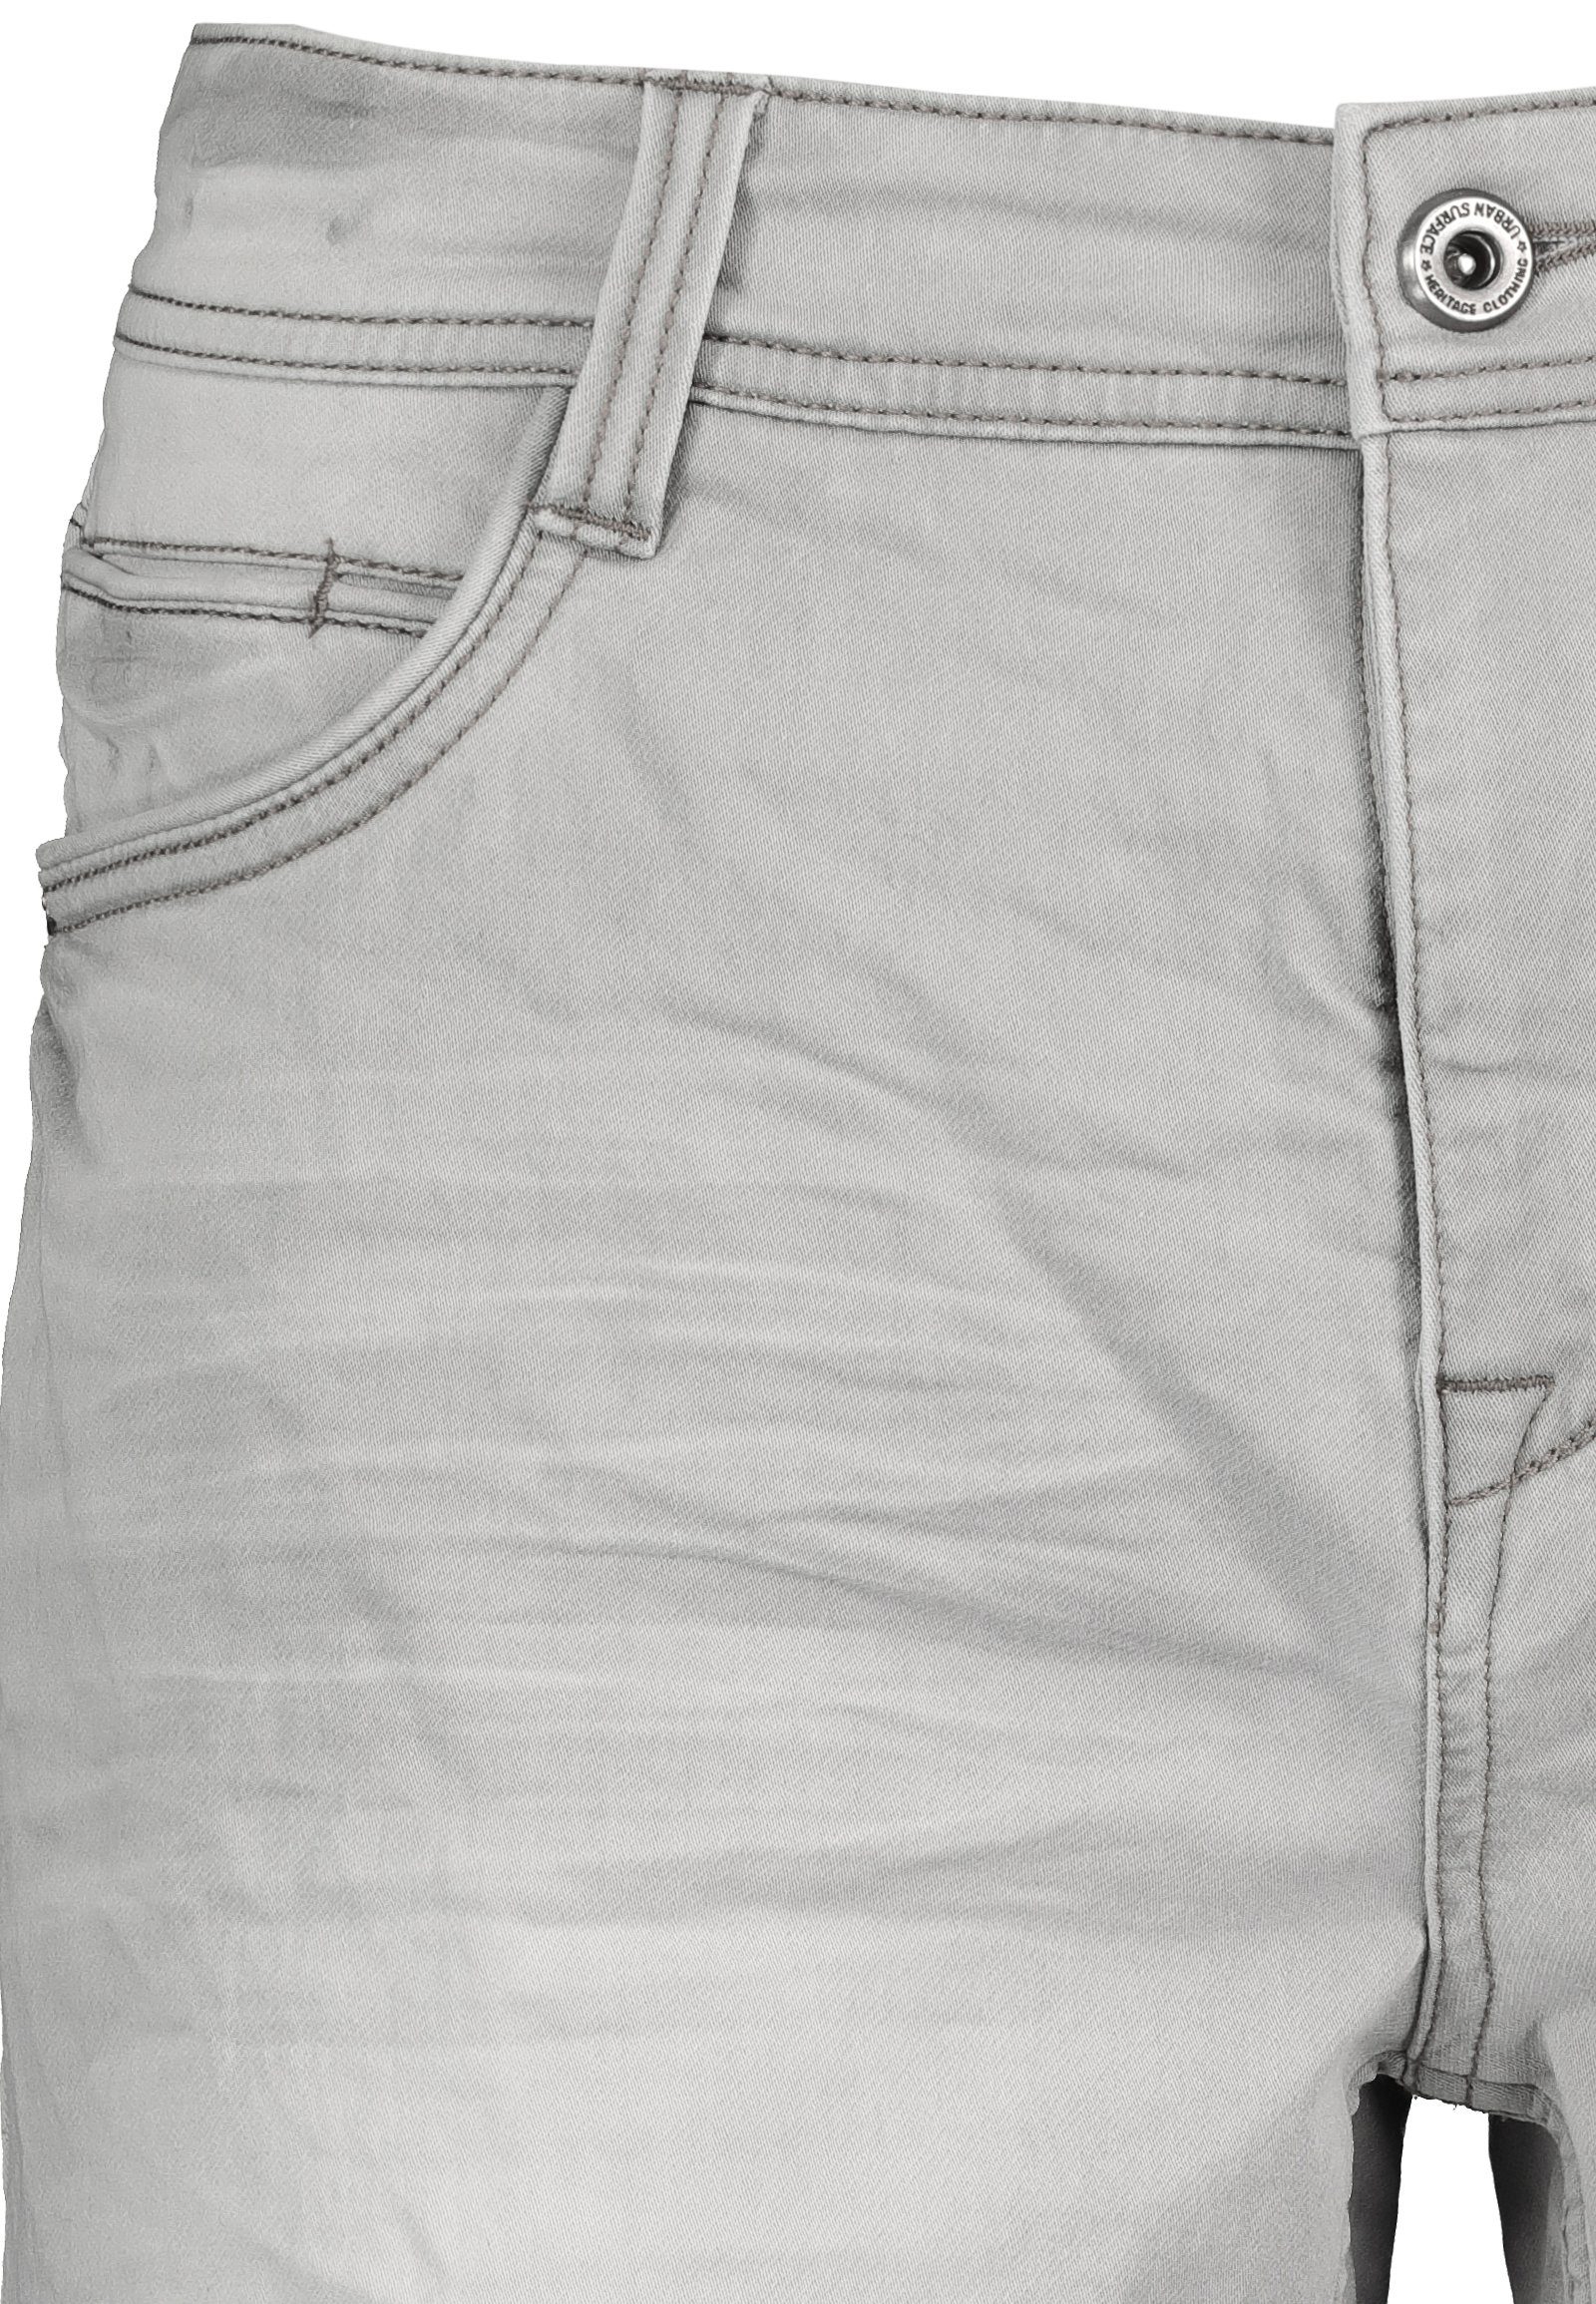 Bermudas kurze Surface Jeans Grey Freizeit Urban Denim Herren Hose Jogging Sweat denim Shorts Bermuda